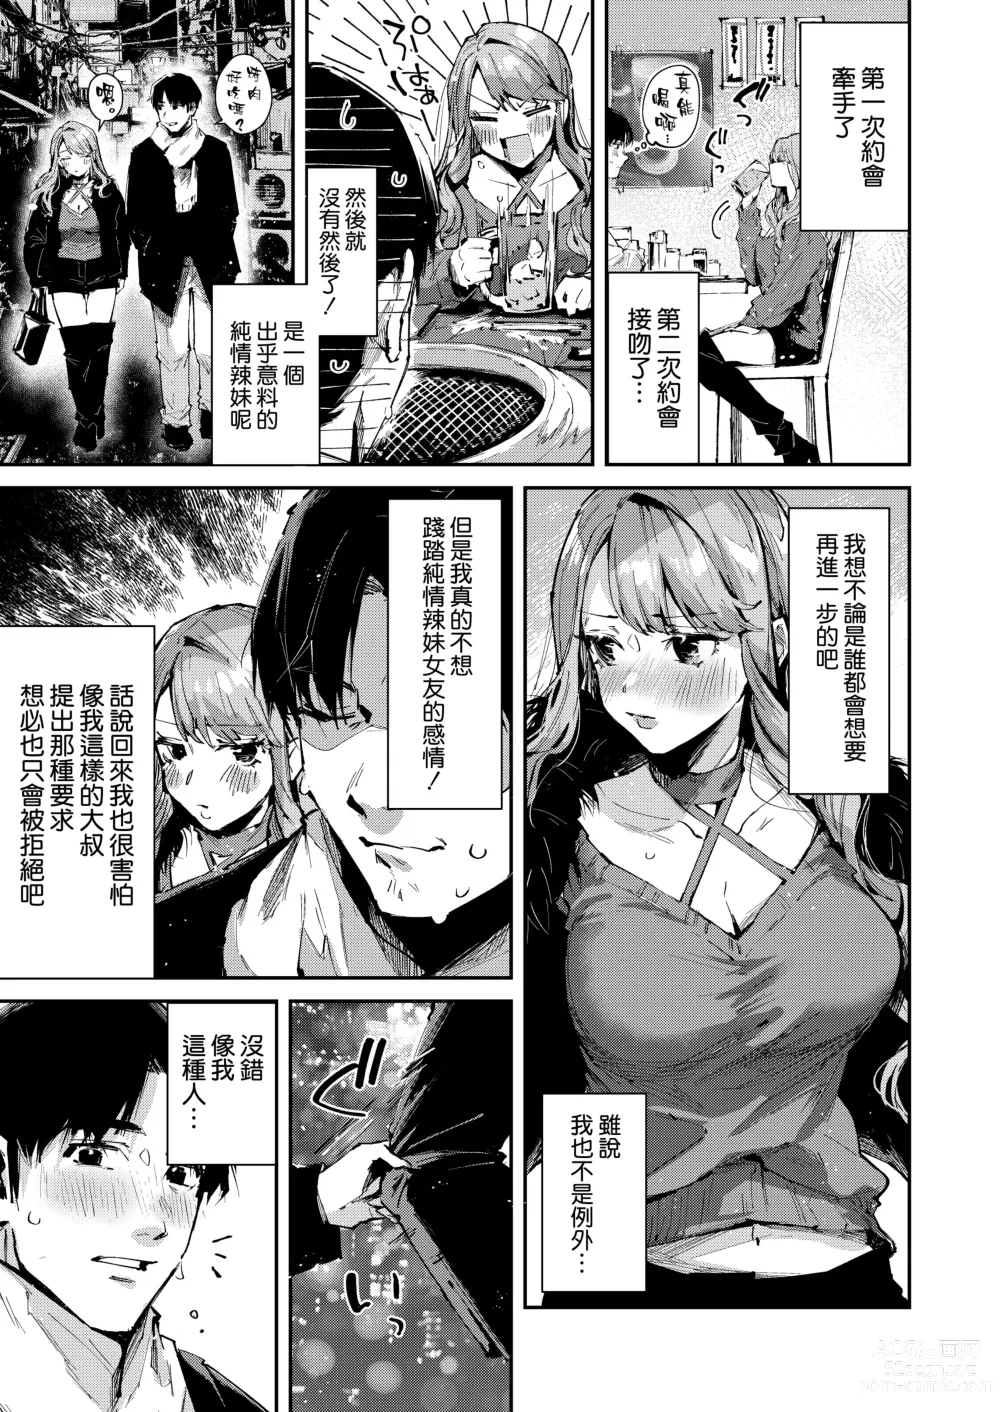 Page 6 of doujinshi Ore no Gal wa Koko ni Iru.